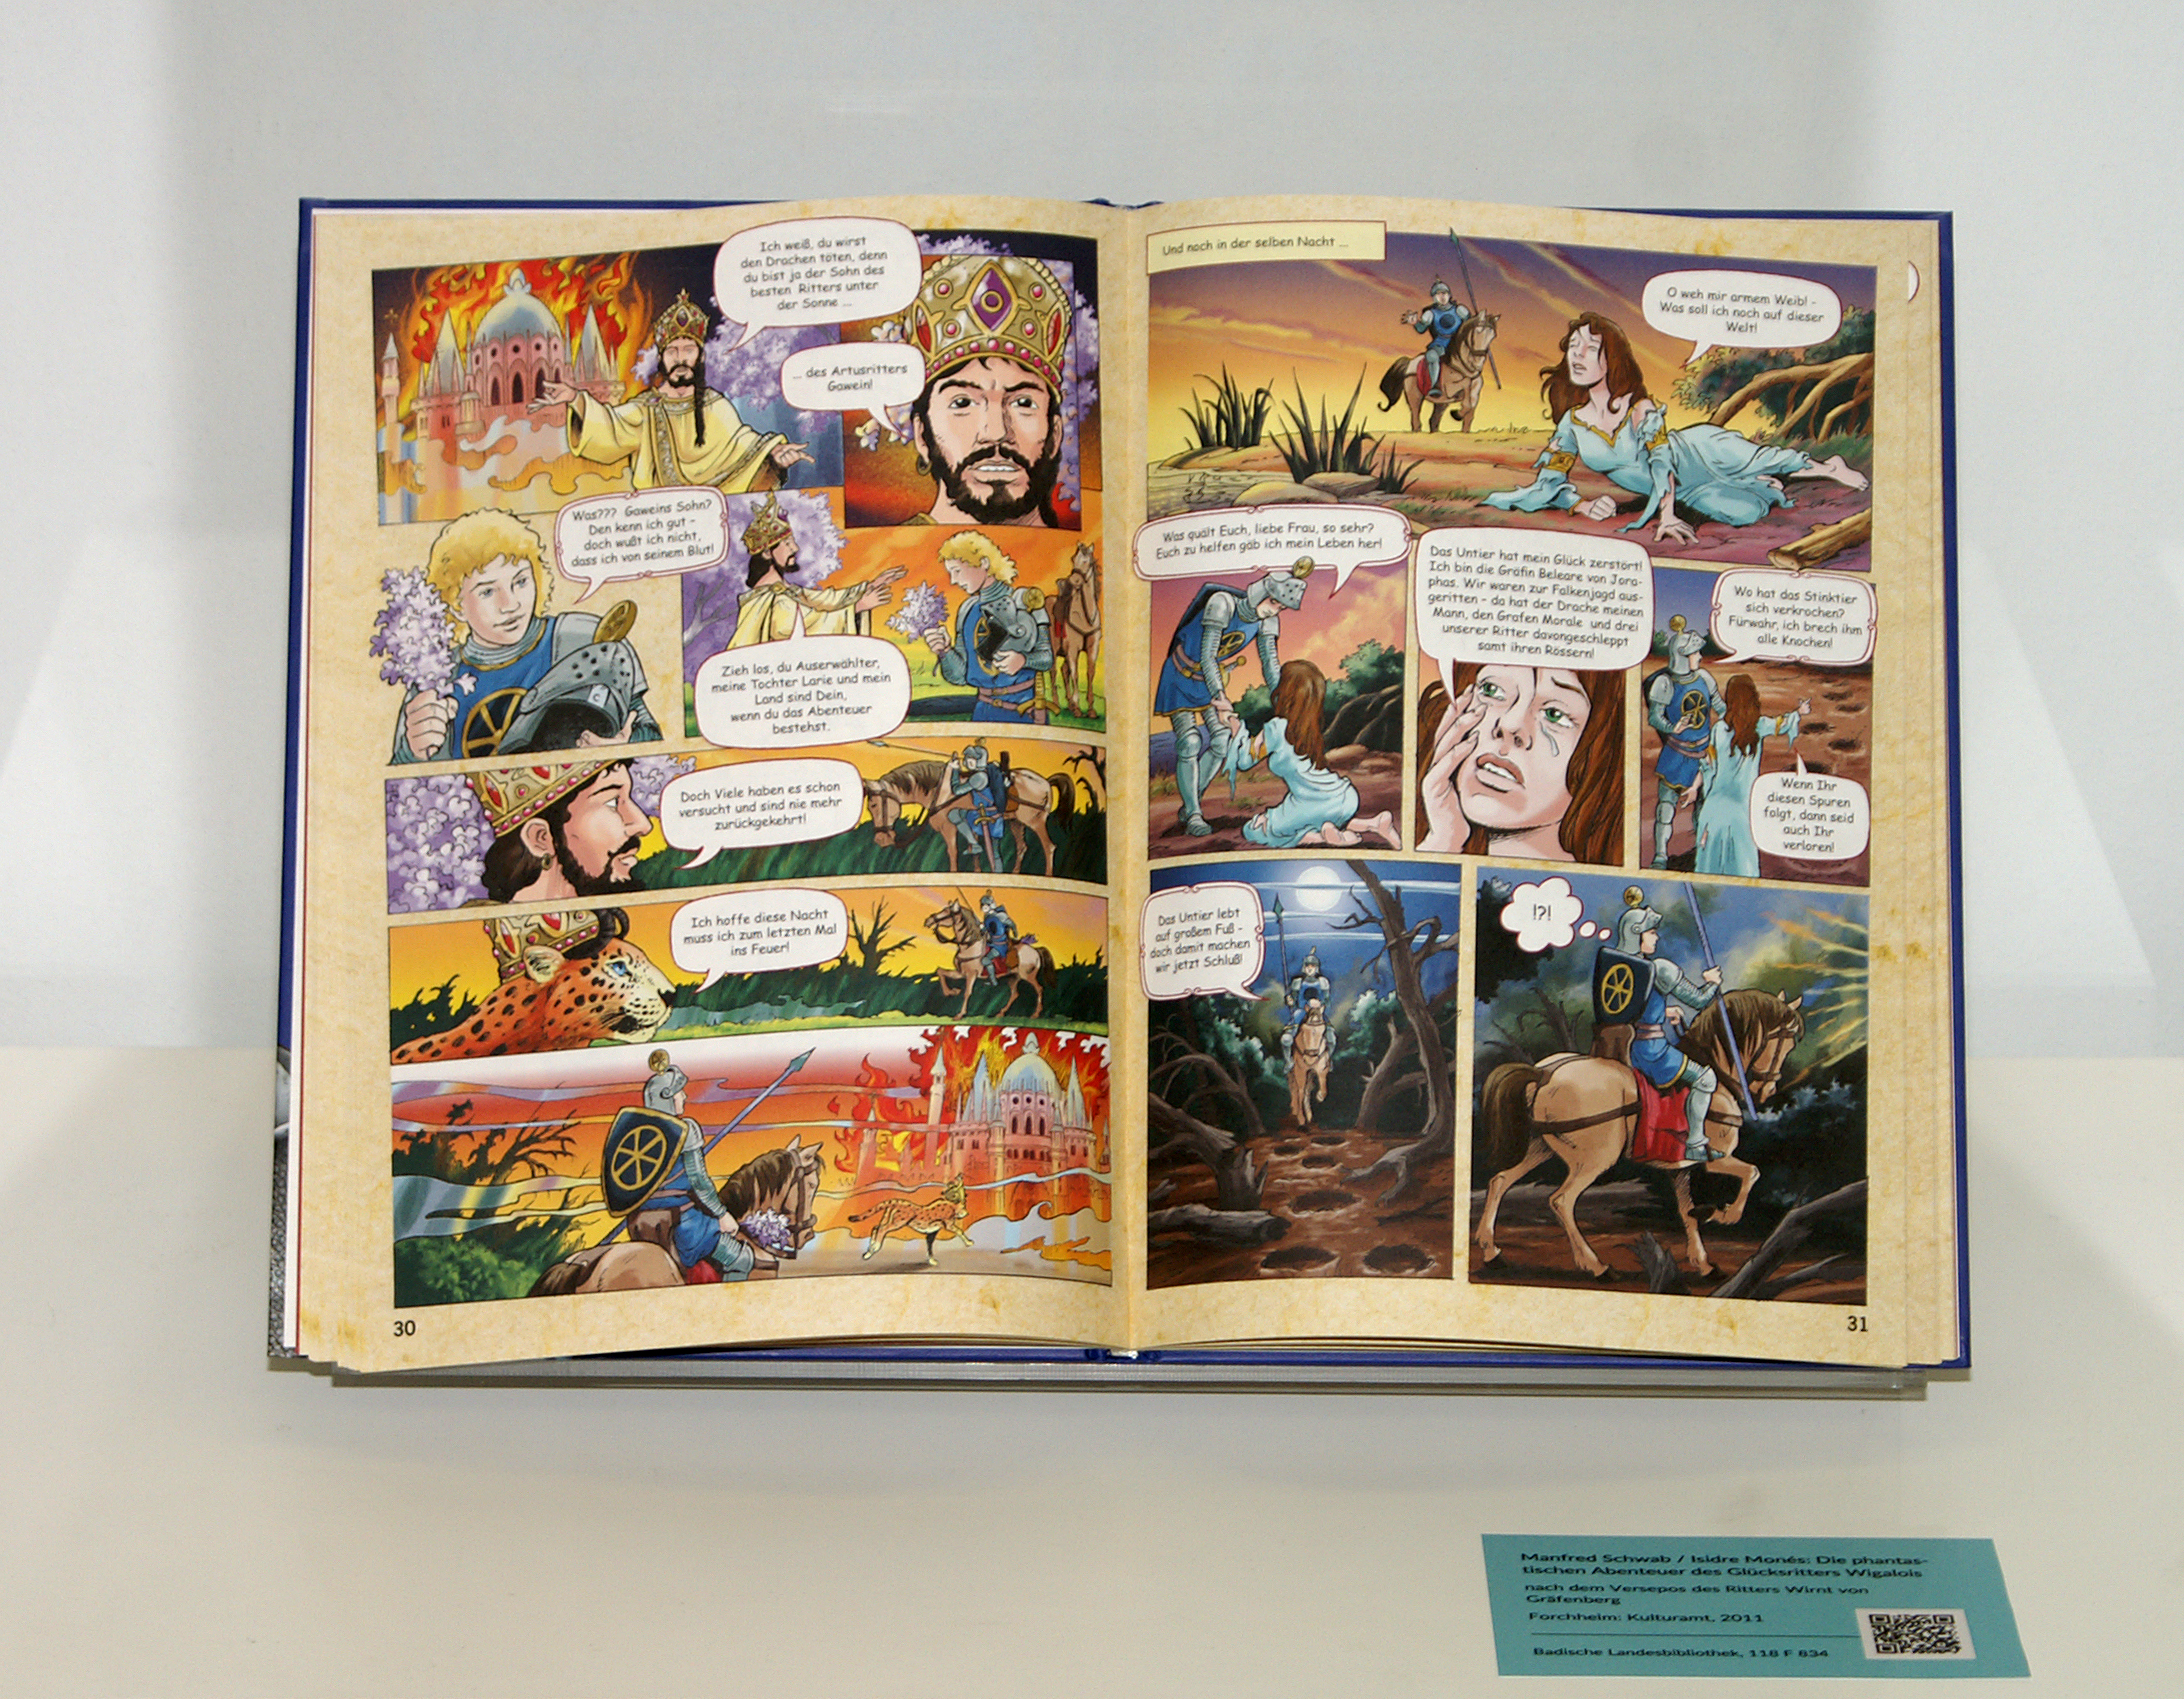 Ausgestellt ist der Comic "Die phantastischen Abenteuer des Glücksritters Wigalois nach dem Versepos des Ritters Wirnt von Gräfenberg Forchheim", der Stil ist bunt und die Sprechblasen sind auf deutsch.